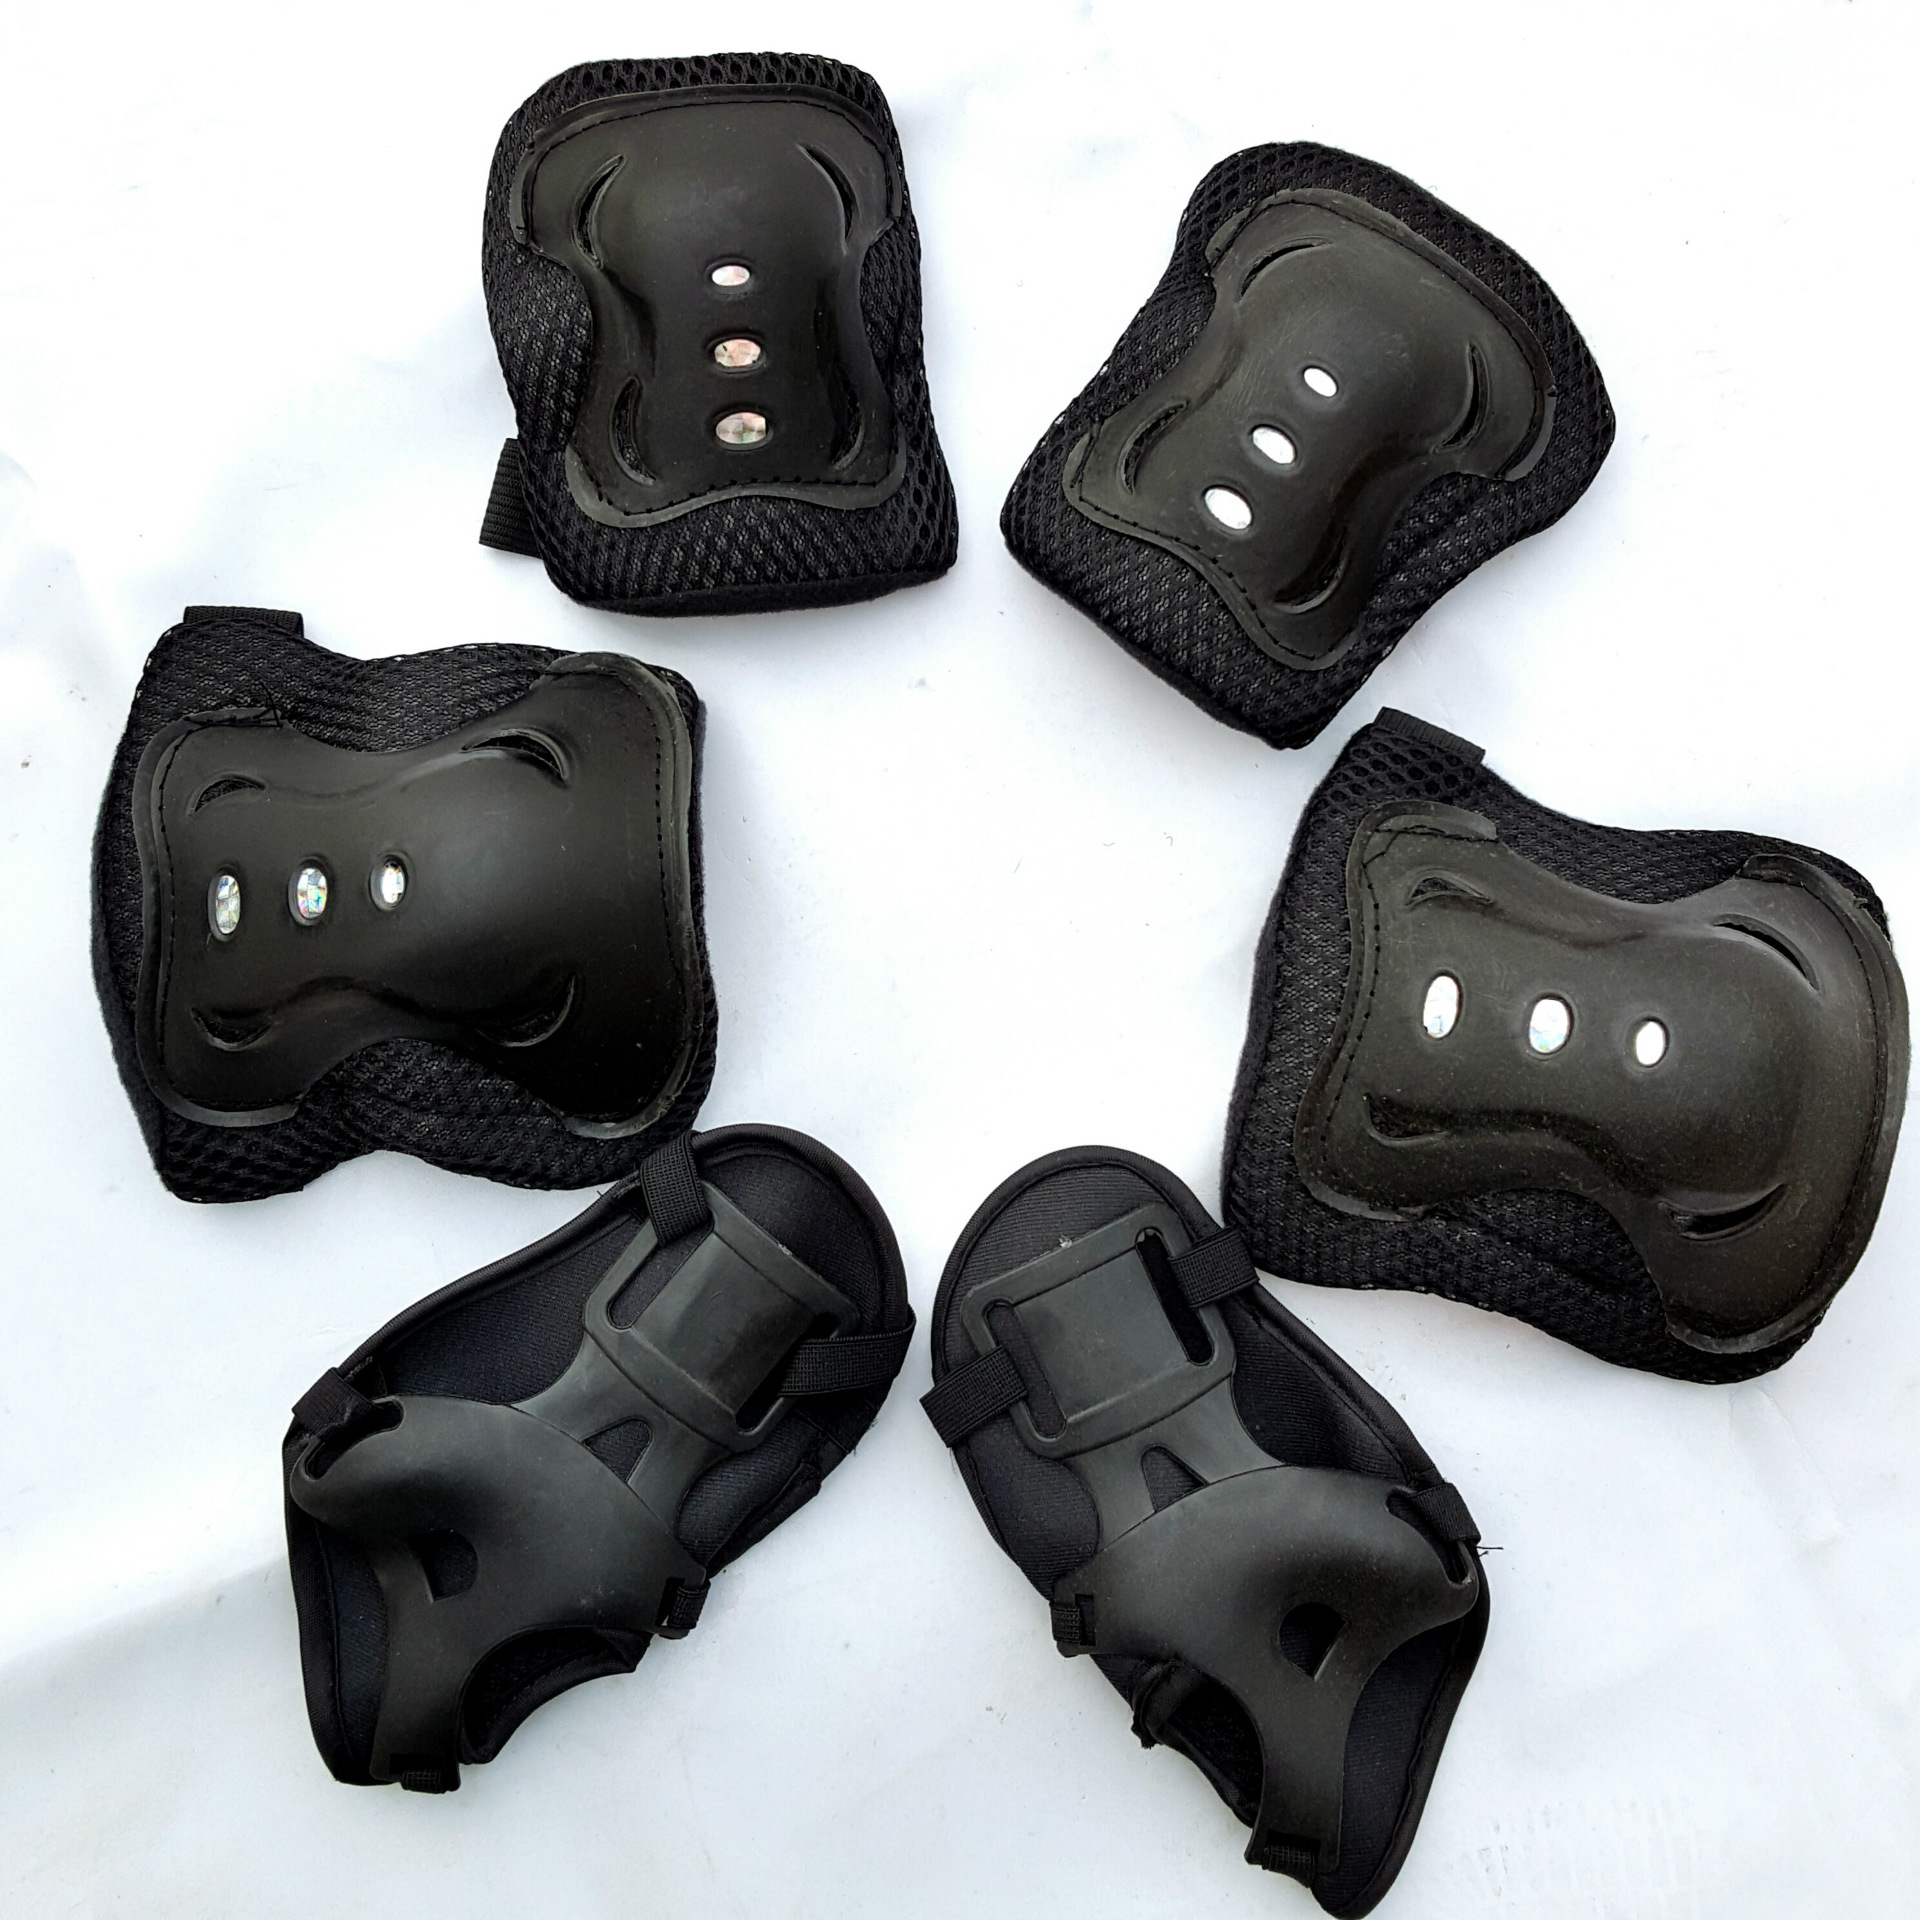 [6 ชิ้น / ชุด] อุปกรณ์ป้องกันโรลเลอร์สเก็ตอุปกรณ์ป้องกันสเก็ต อุปกรณ์ป้องกันกีฬา 4-15 ปี Child knee pads